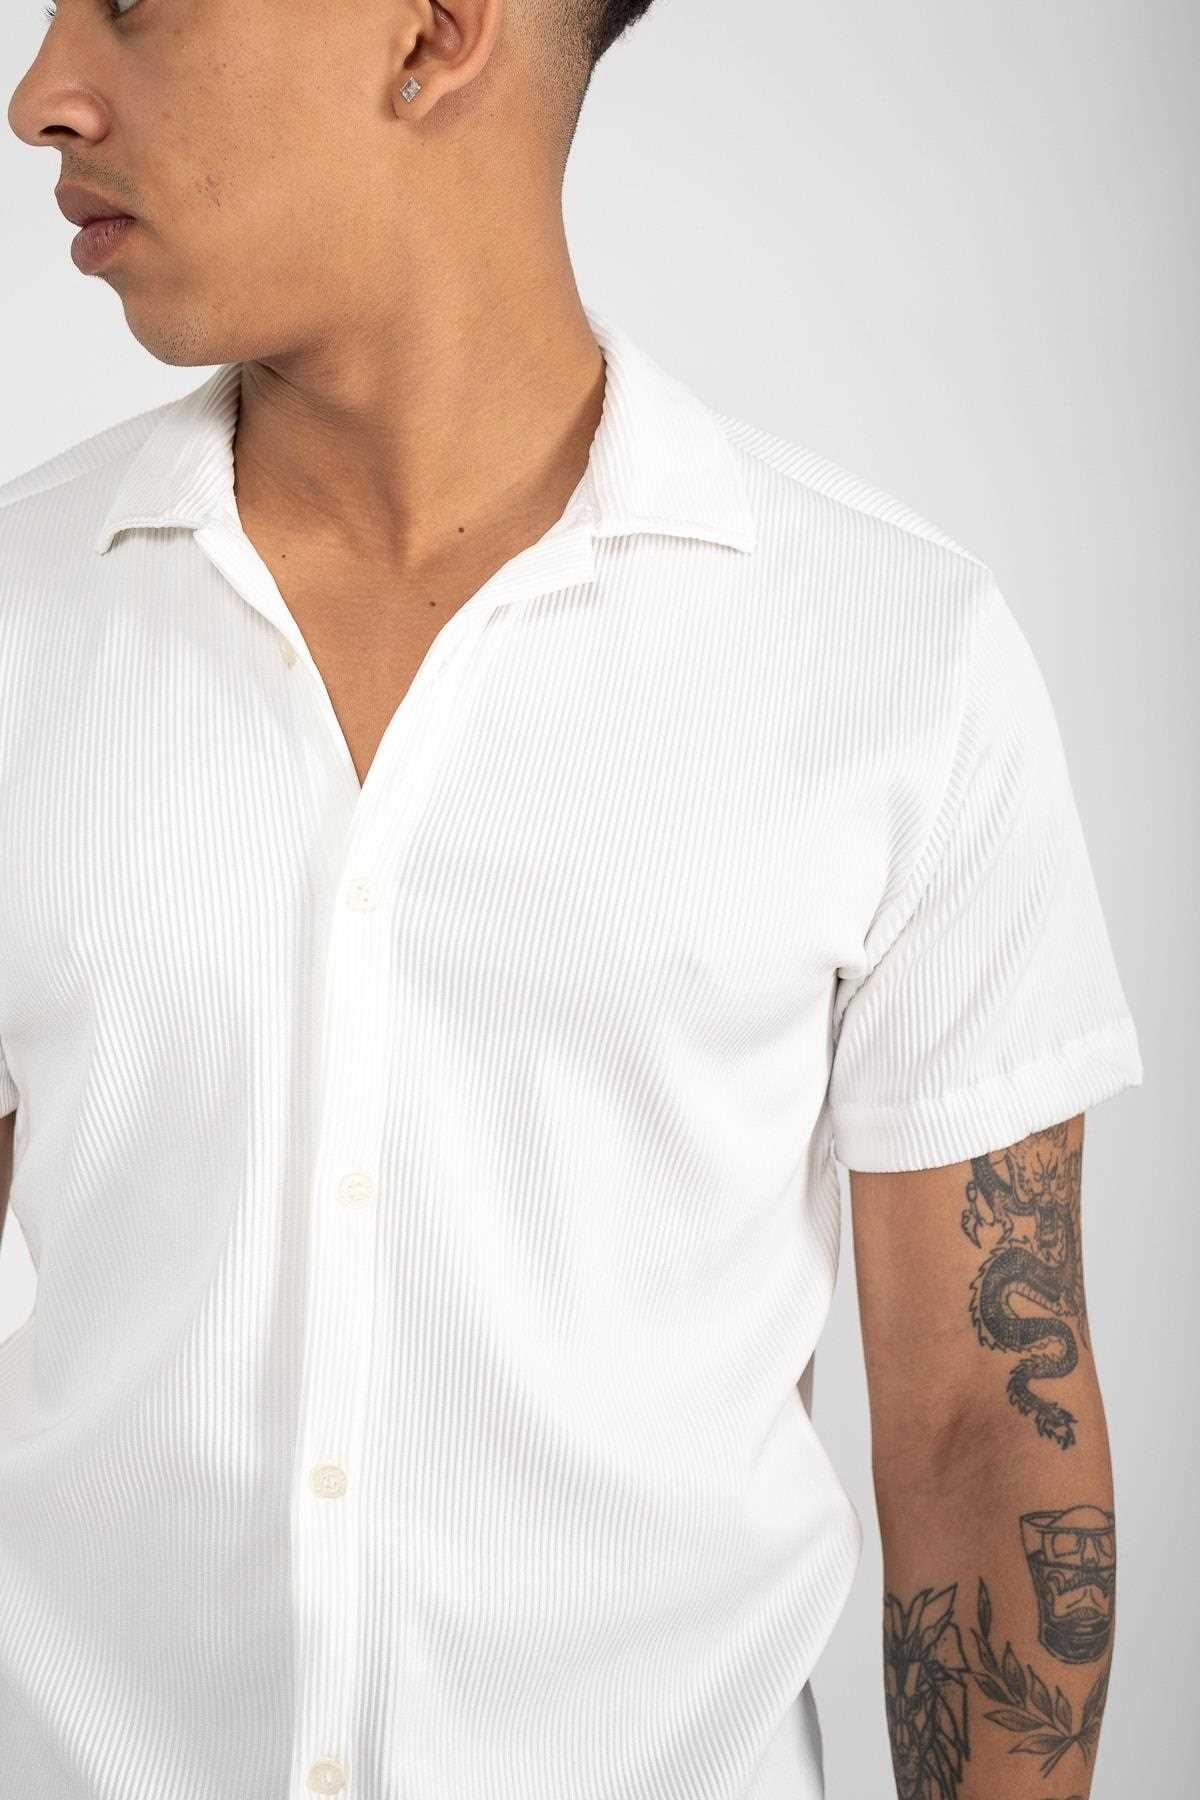 پیراهن آستین کوتاه مردانه جدید برند WAMOSSALAPLI رنگ سفید ty306075735